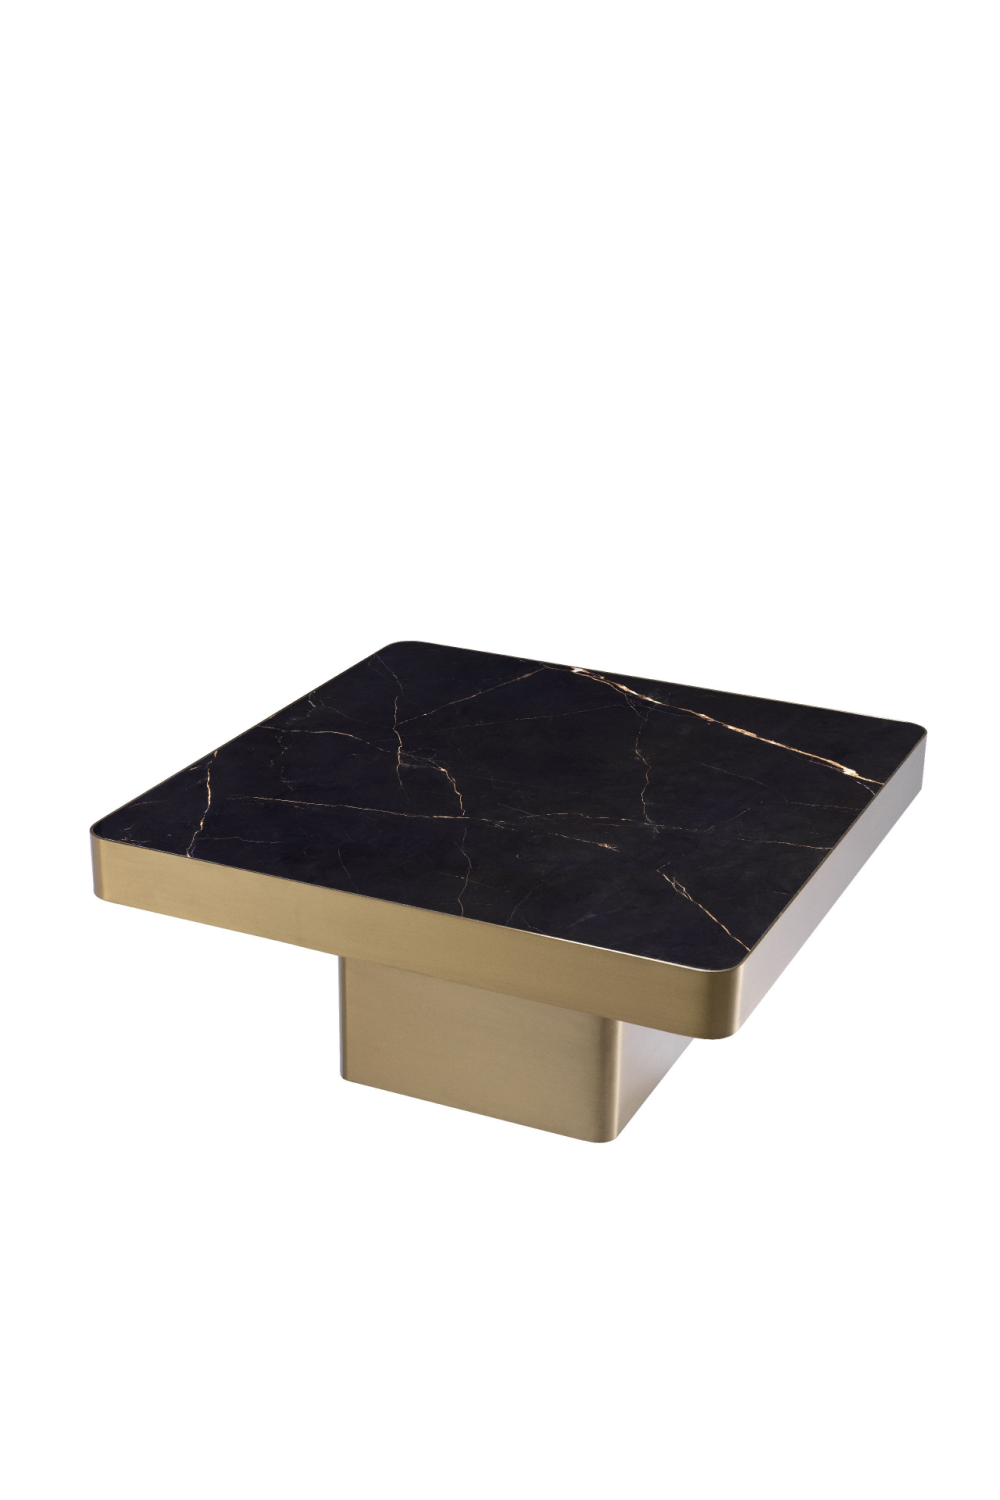 Square Pedestal Coffee Table | Eichholtz Luxus | #1 Eichholtz Retailer